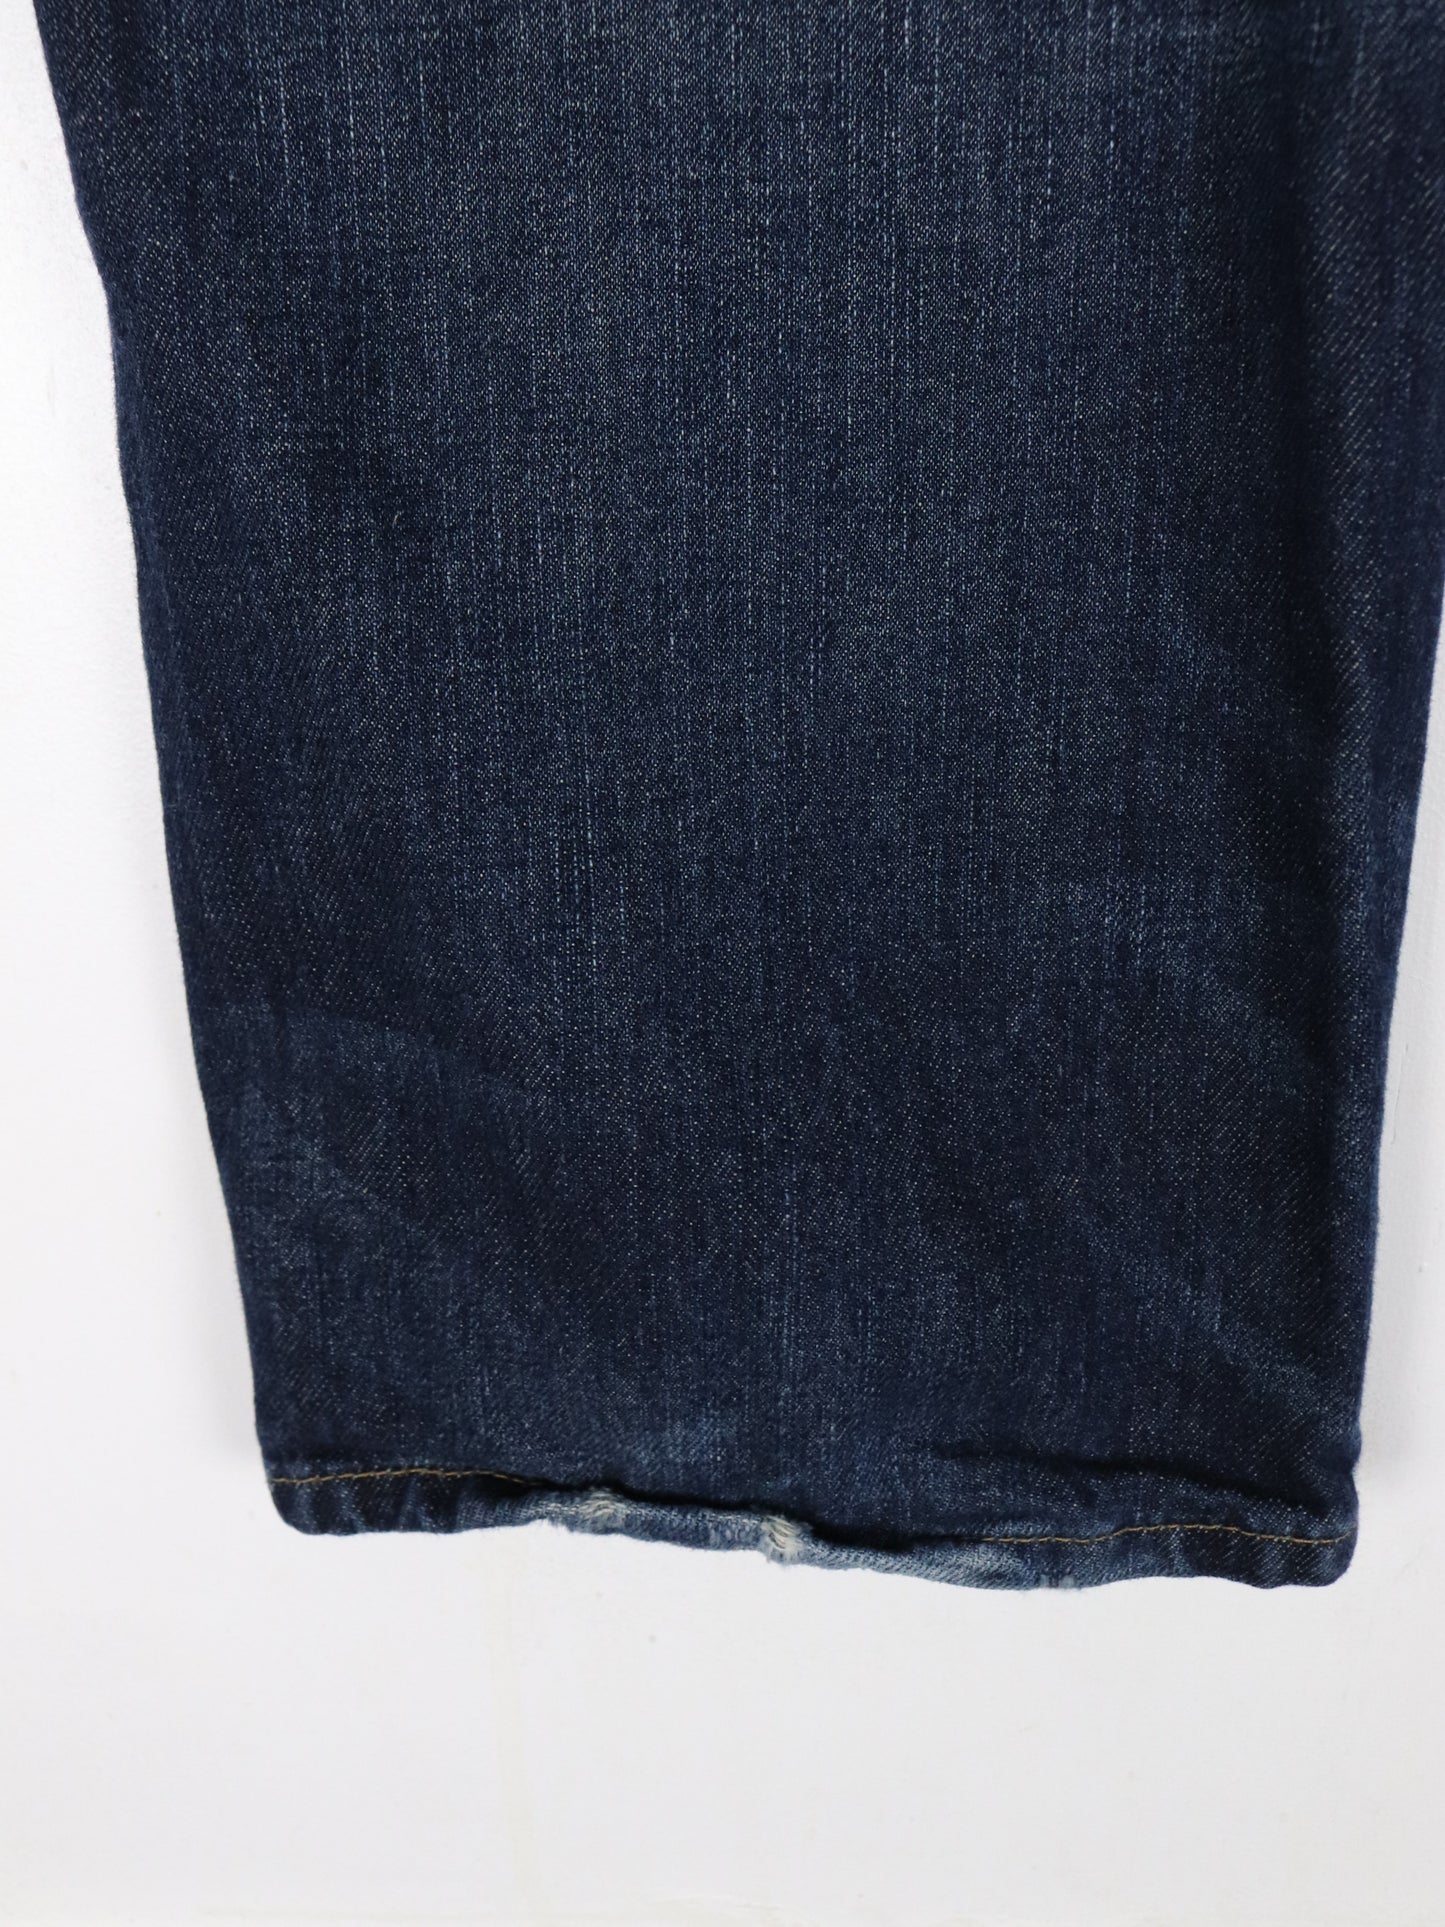 Polo Ralph Lauren Pants Mens 35 x 30 Blue Denim Jeans